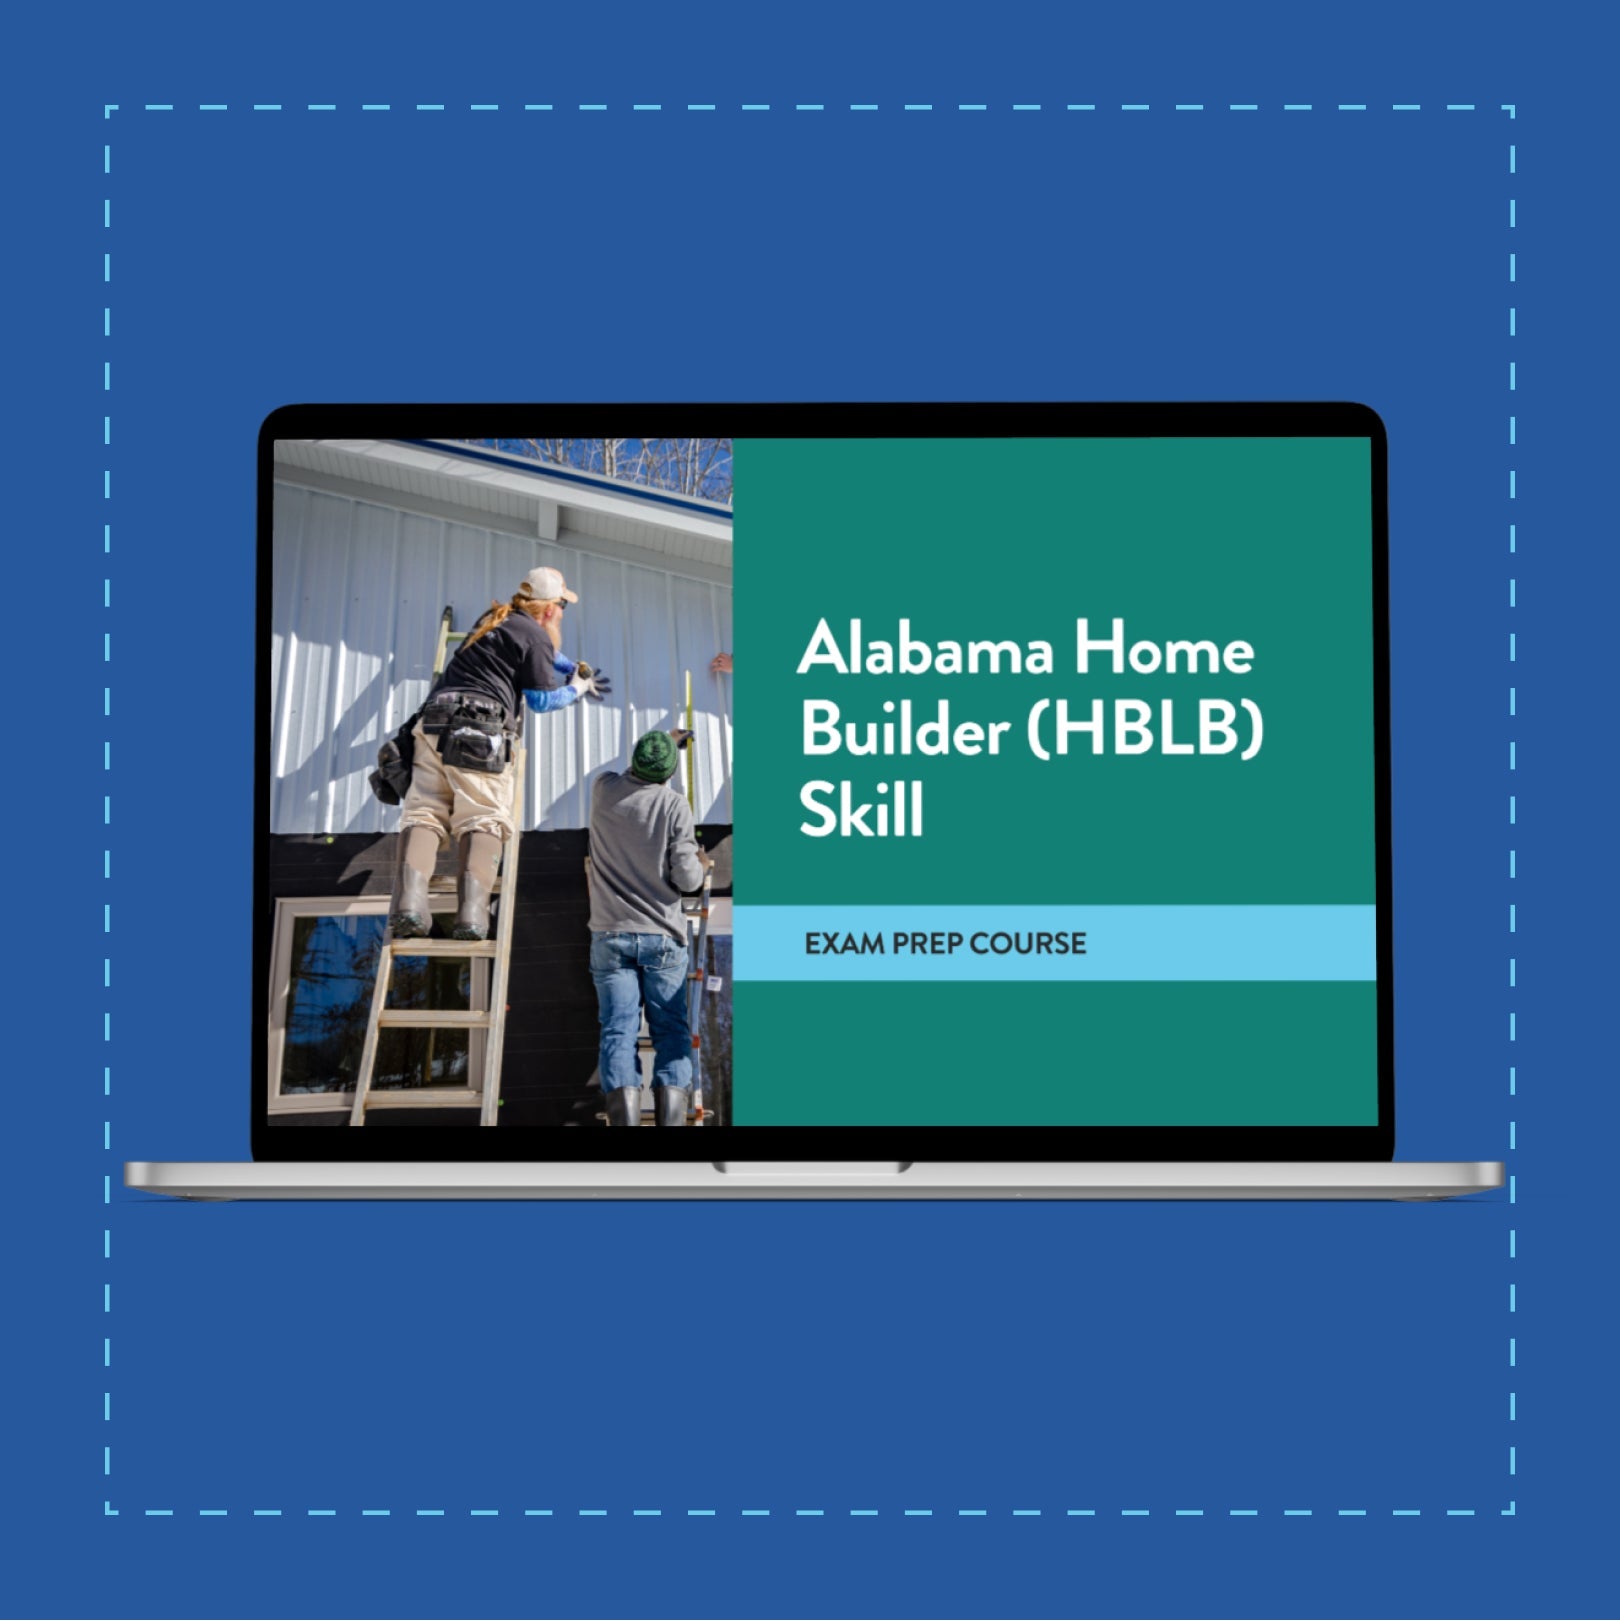 Alabama Home Builder (HBLB) Skill Exam Prep Course